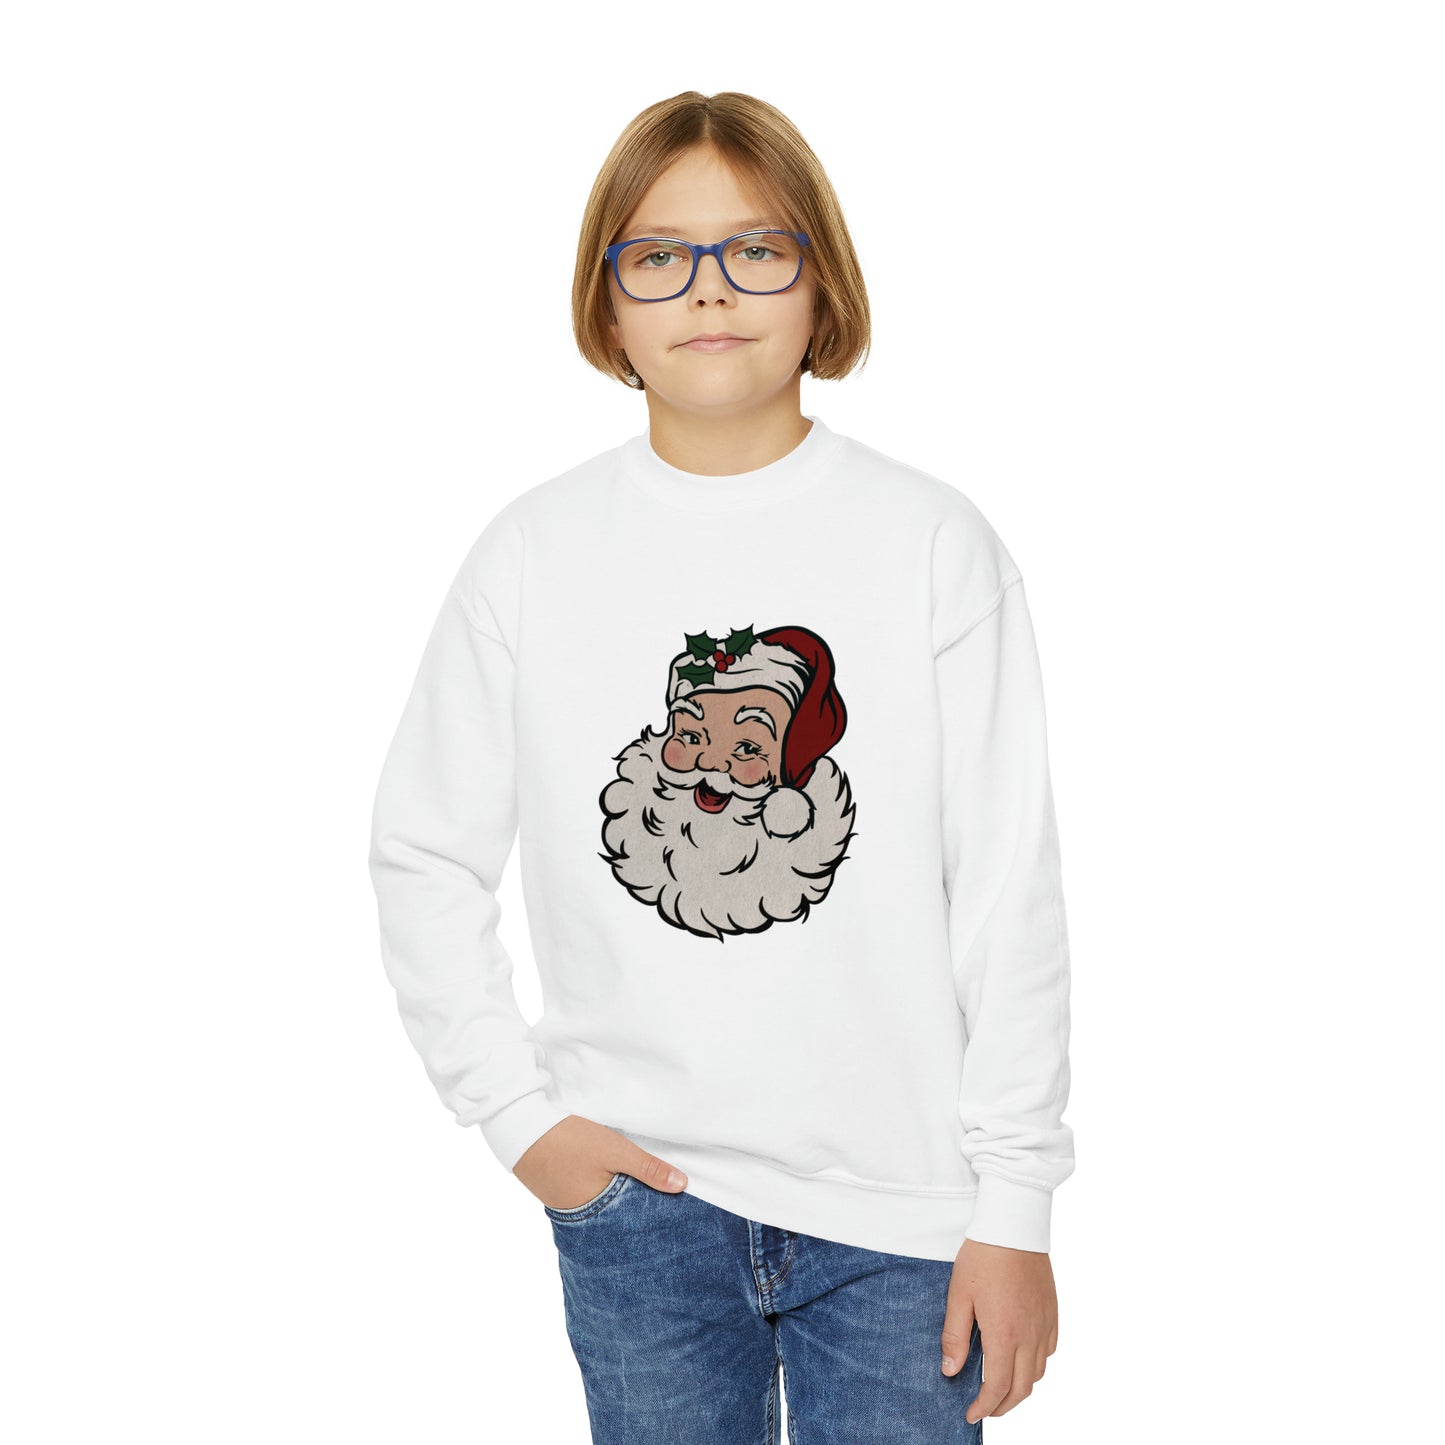 Retro Santa Youth Crewneck Sweatshirt